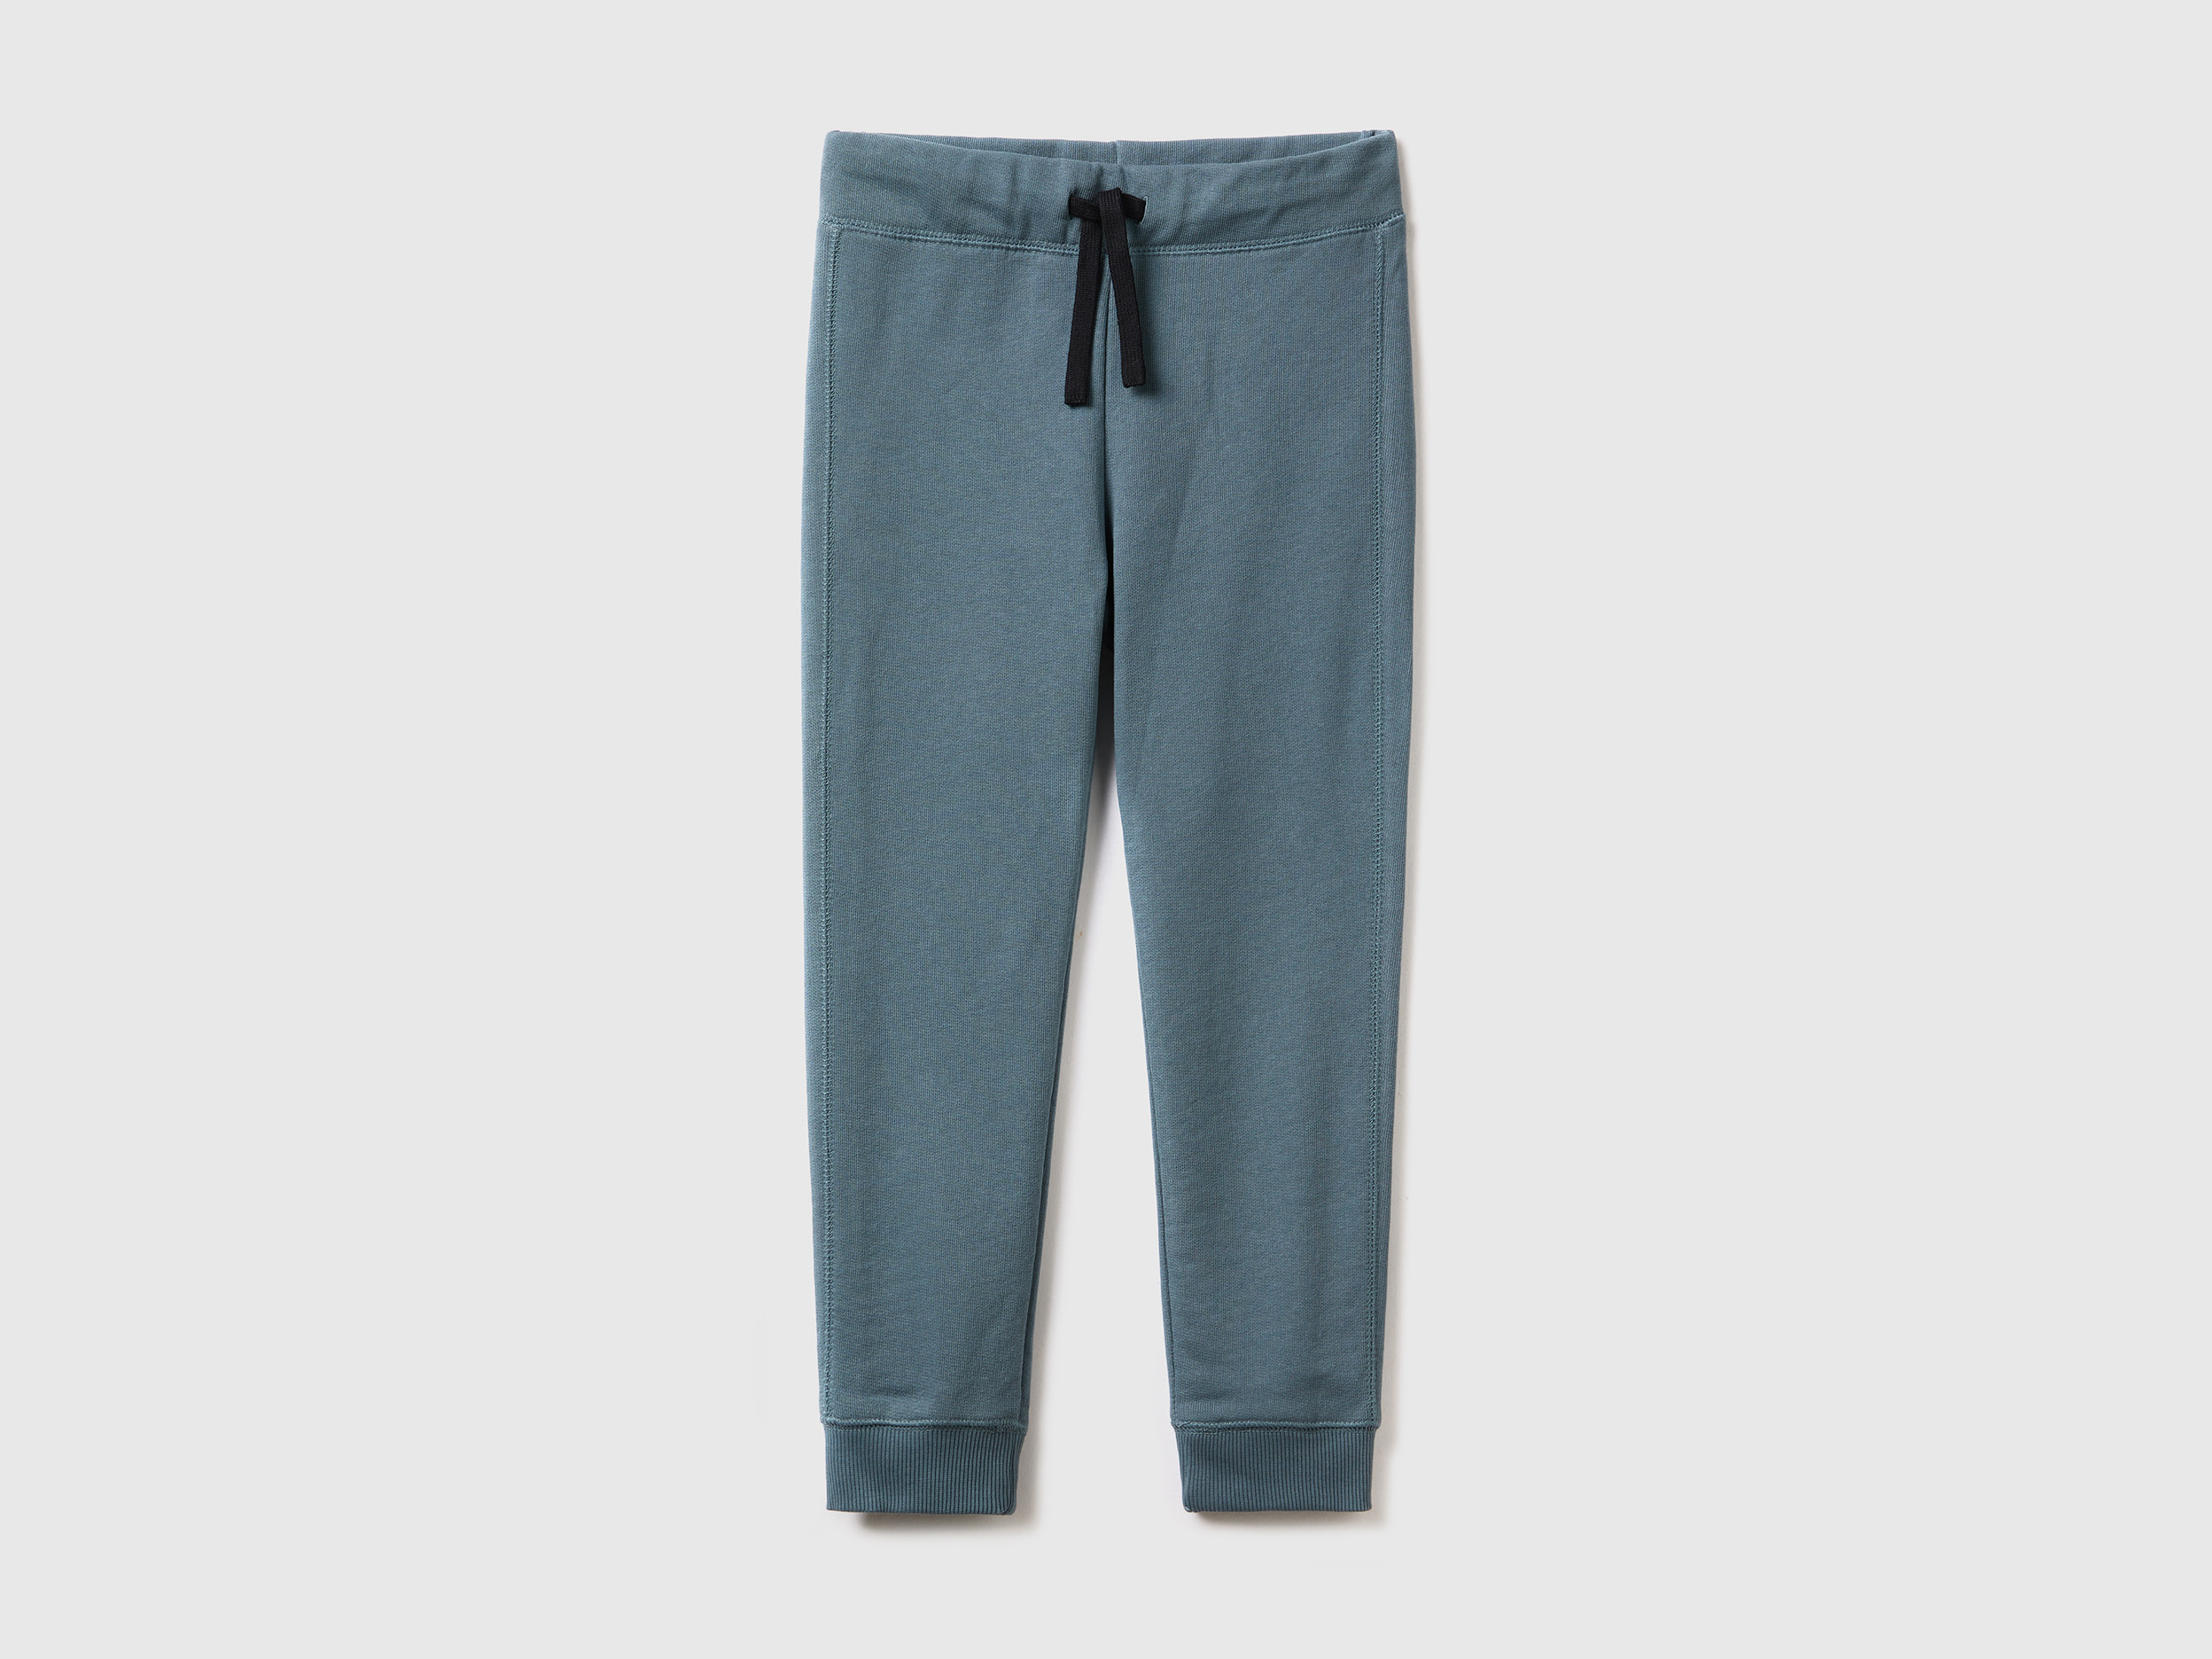 Benetton, 100% Cotton Sweatpants, size 2XL, Dark Gray, Kids